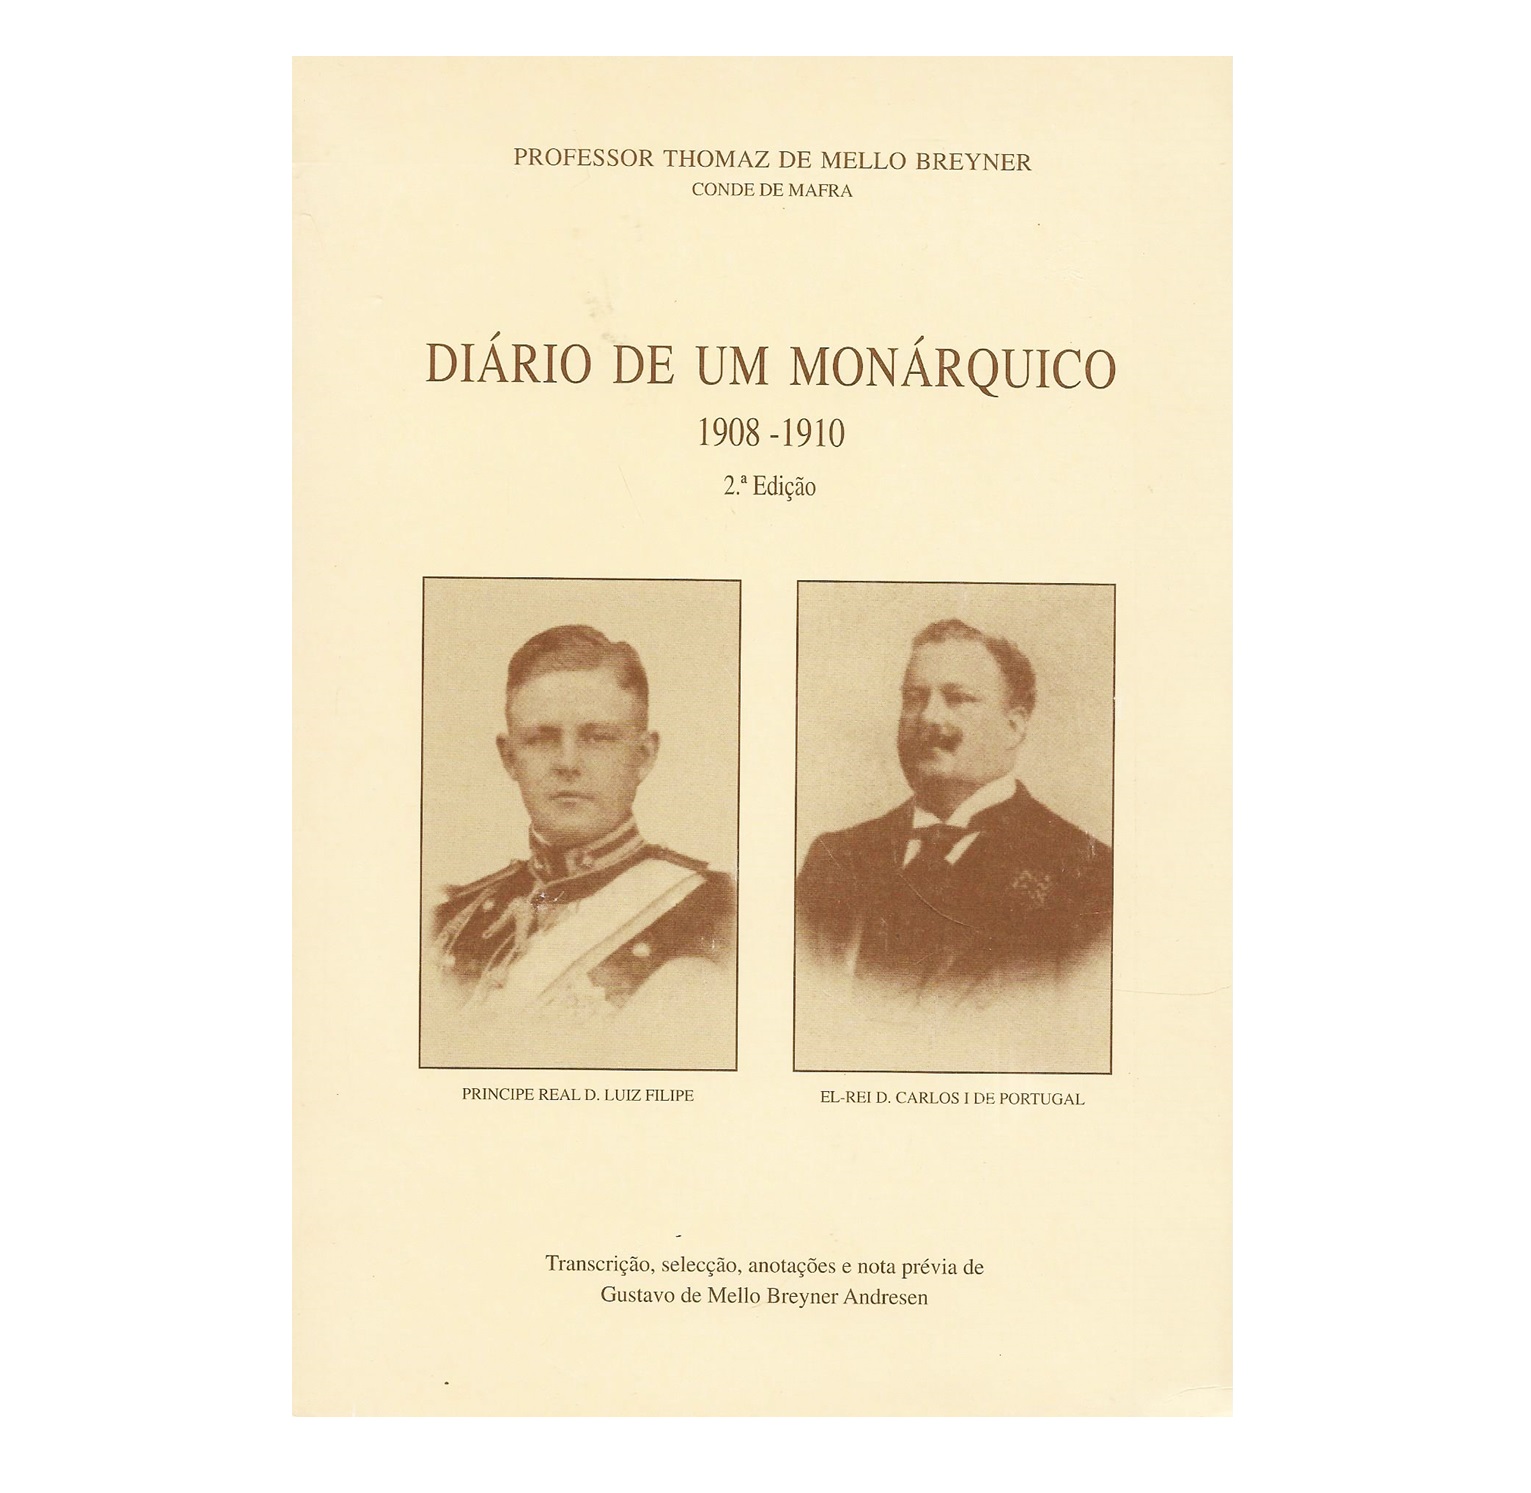 DIÁRIO DE UM MONÁRQUICO (1908-1910)